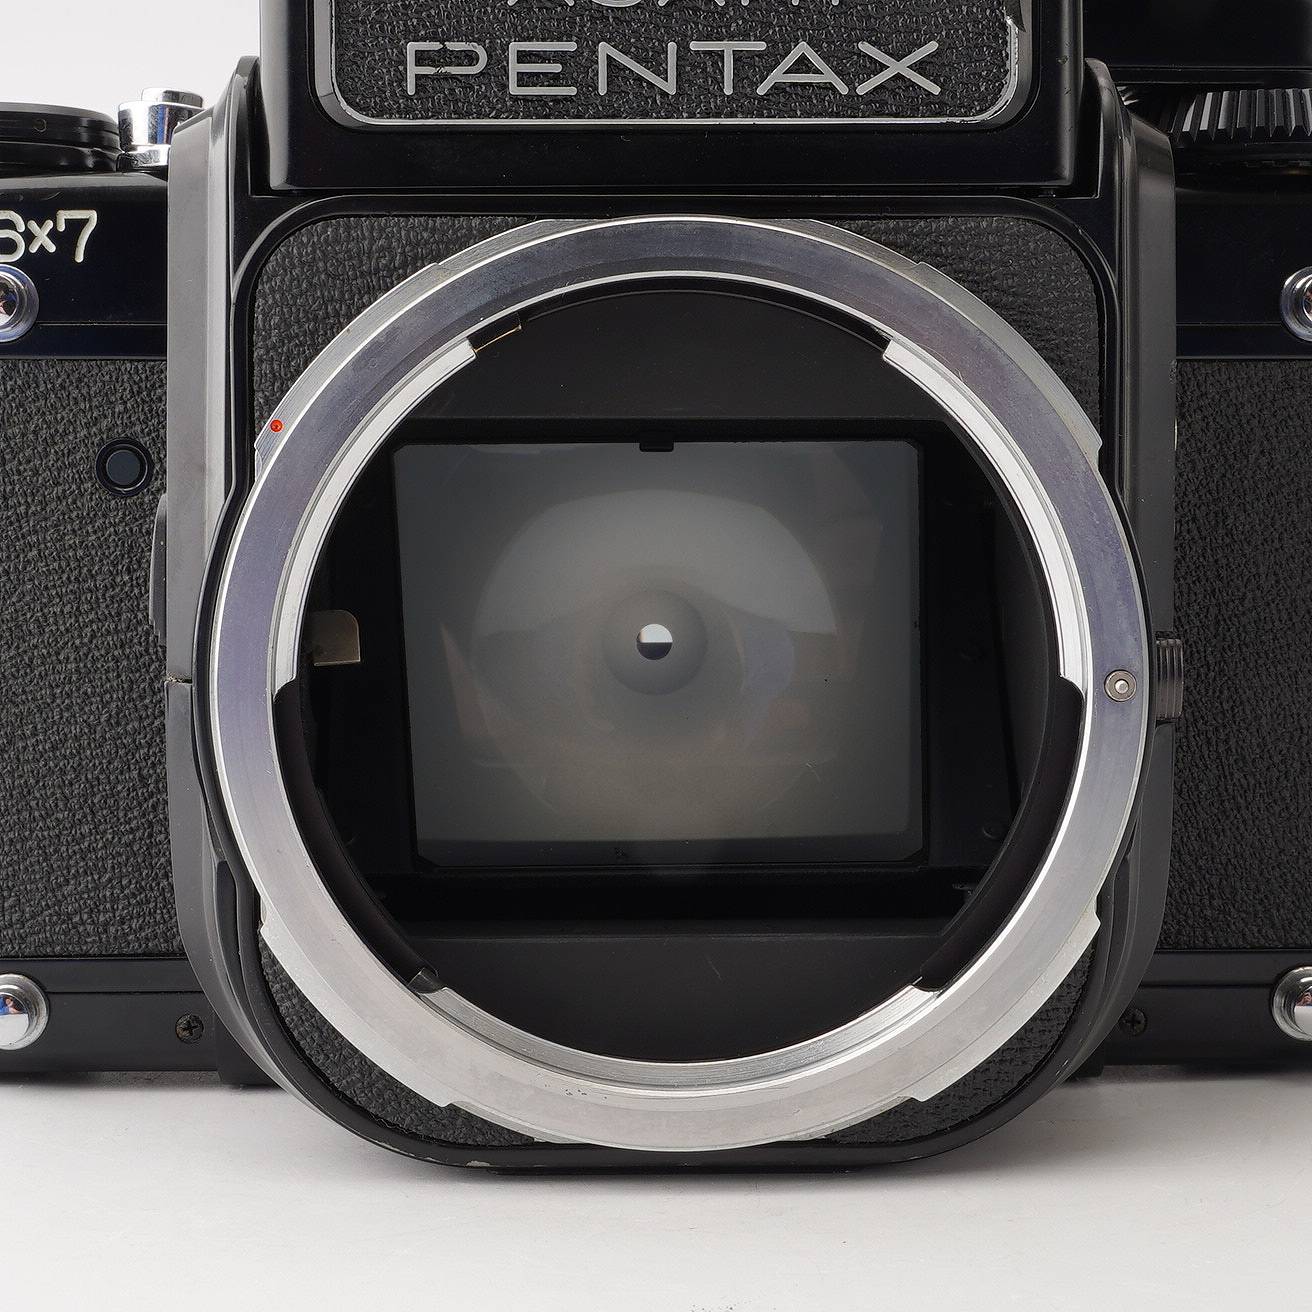 ペンタックス Pentax 6x7 TTL ミラーアップ 中判フィルムカメラ 